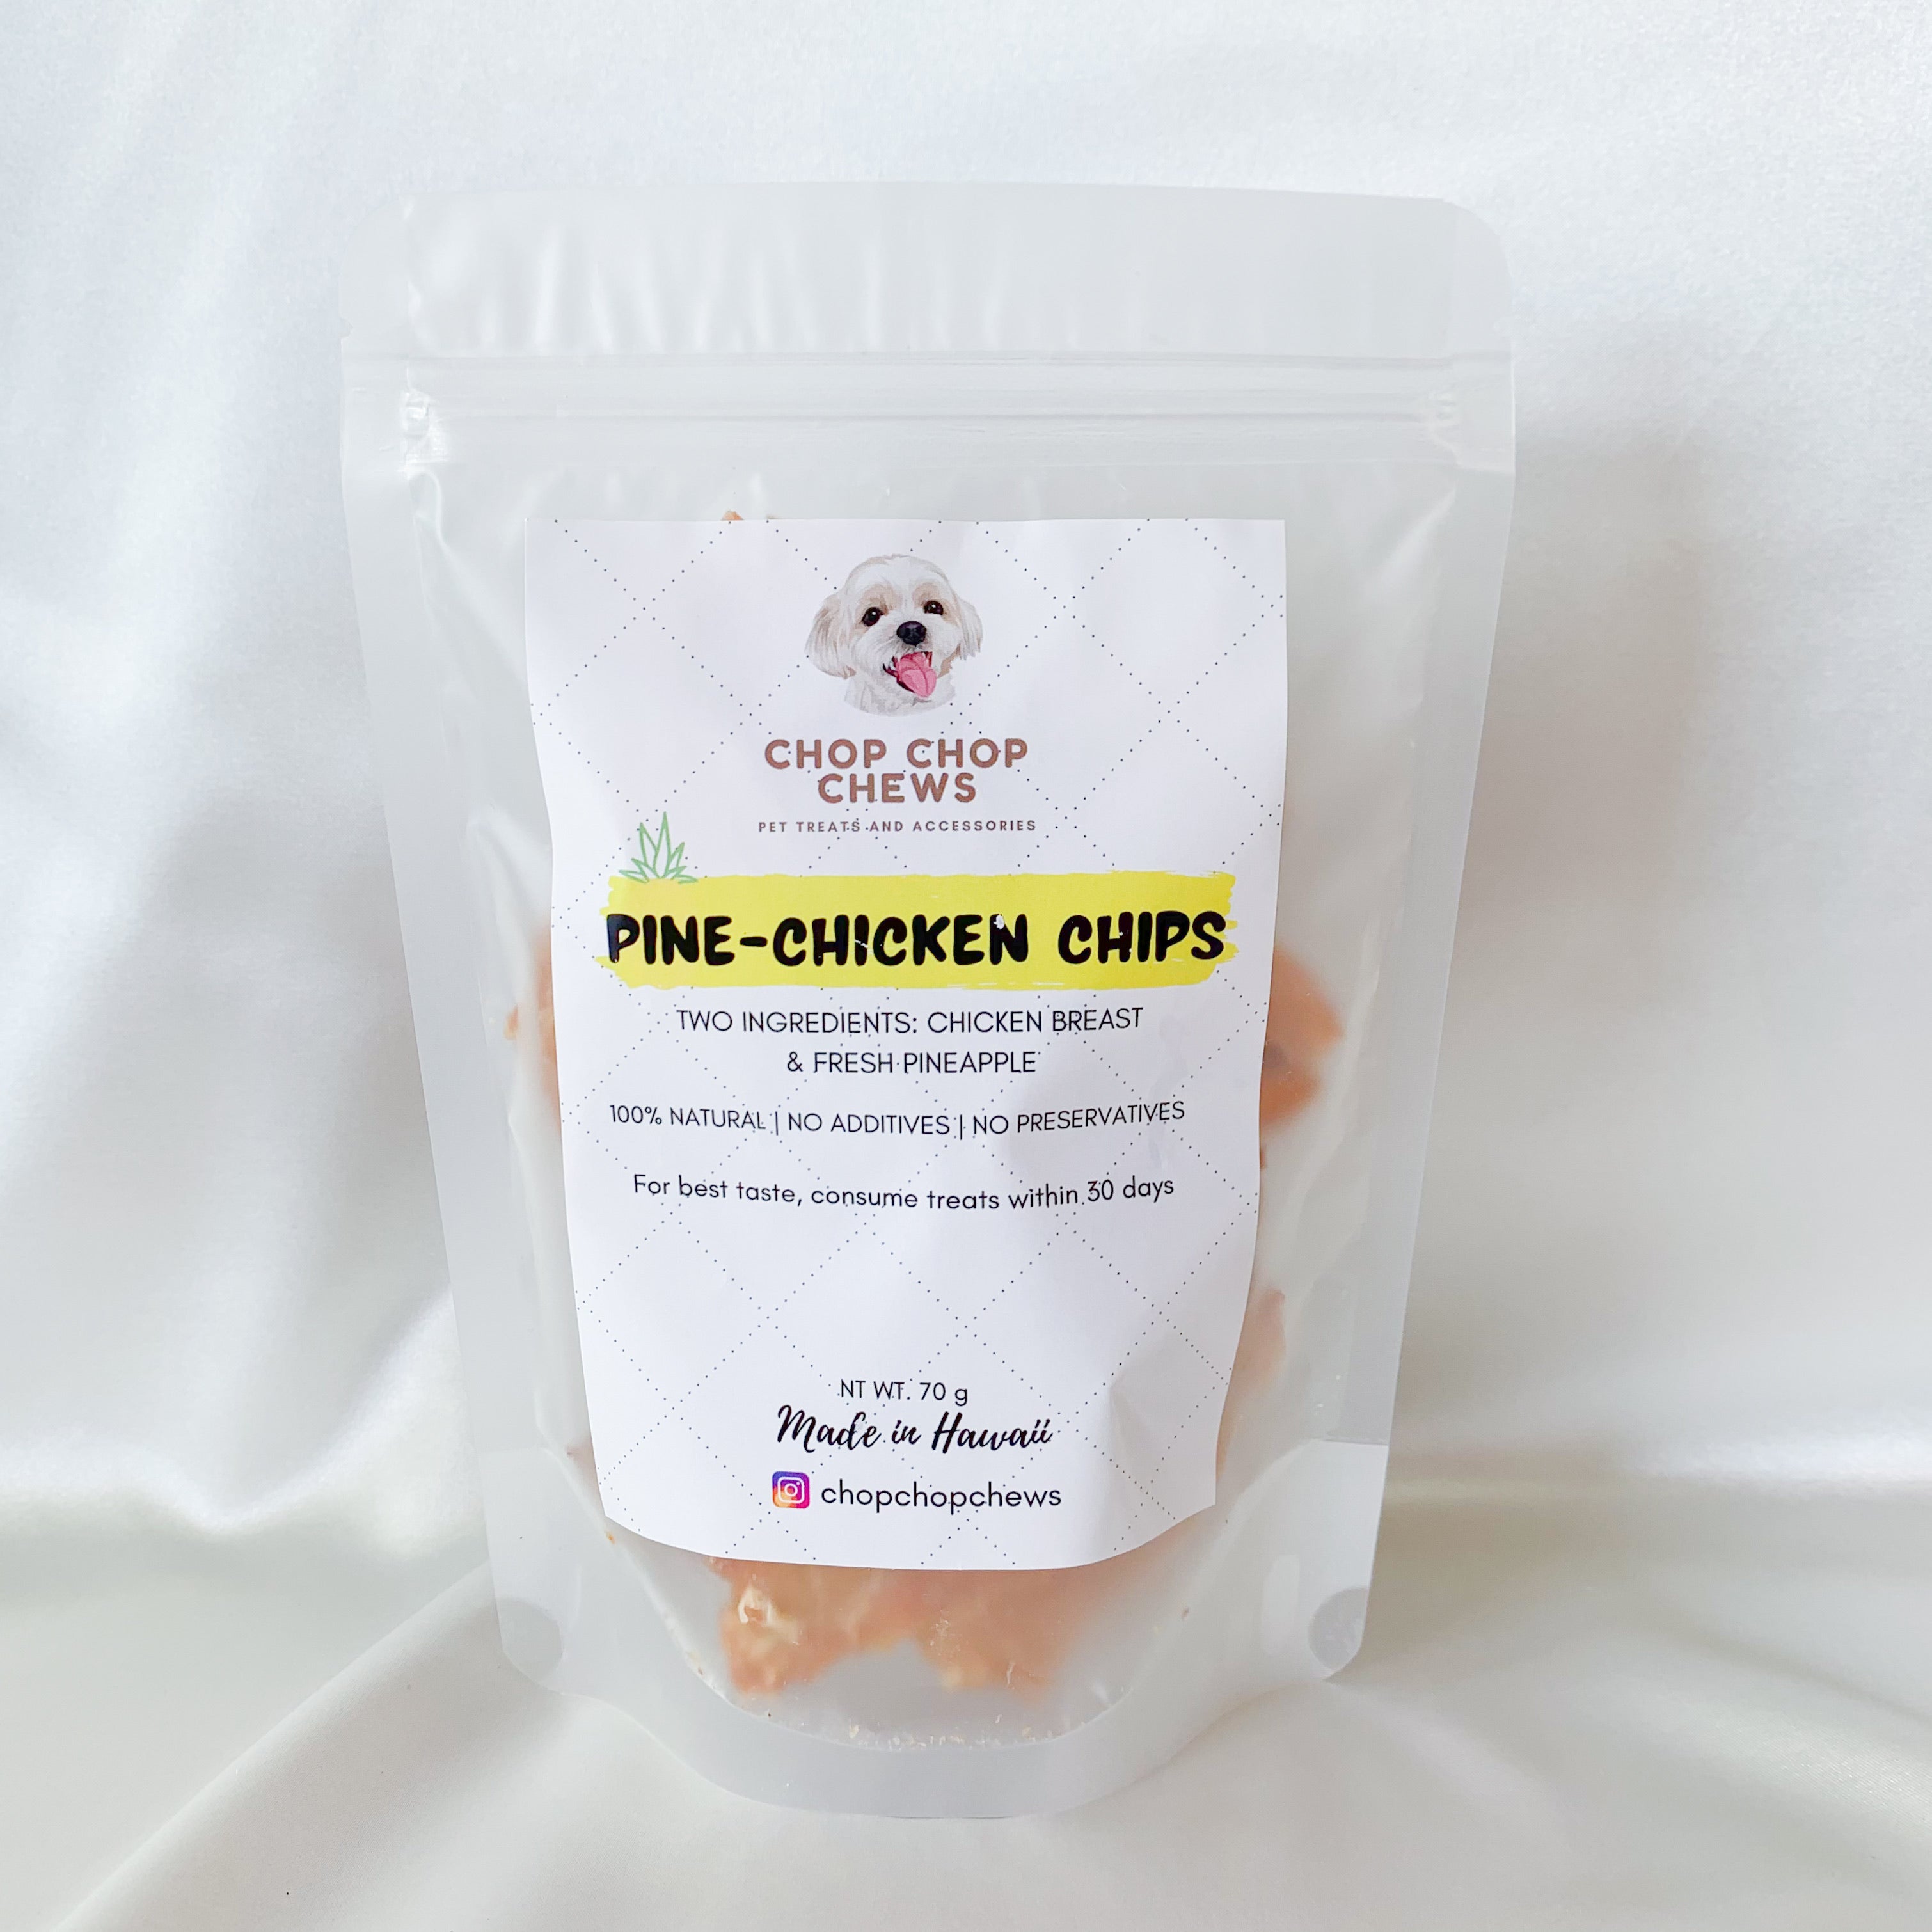 Pine-Chicken Chips